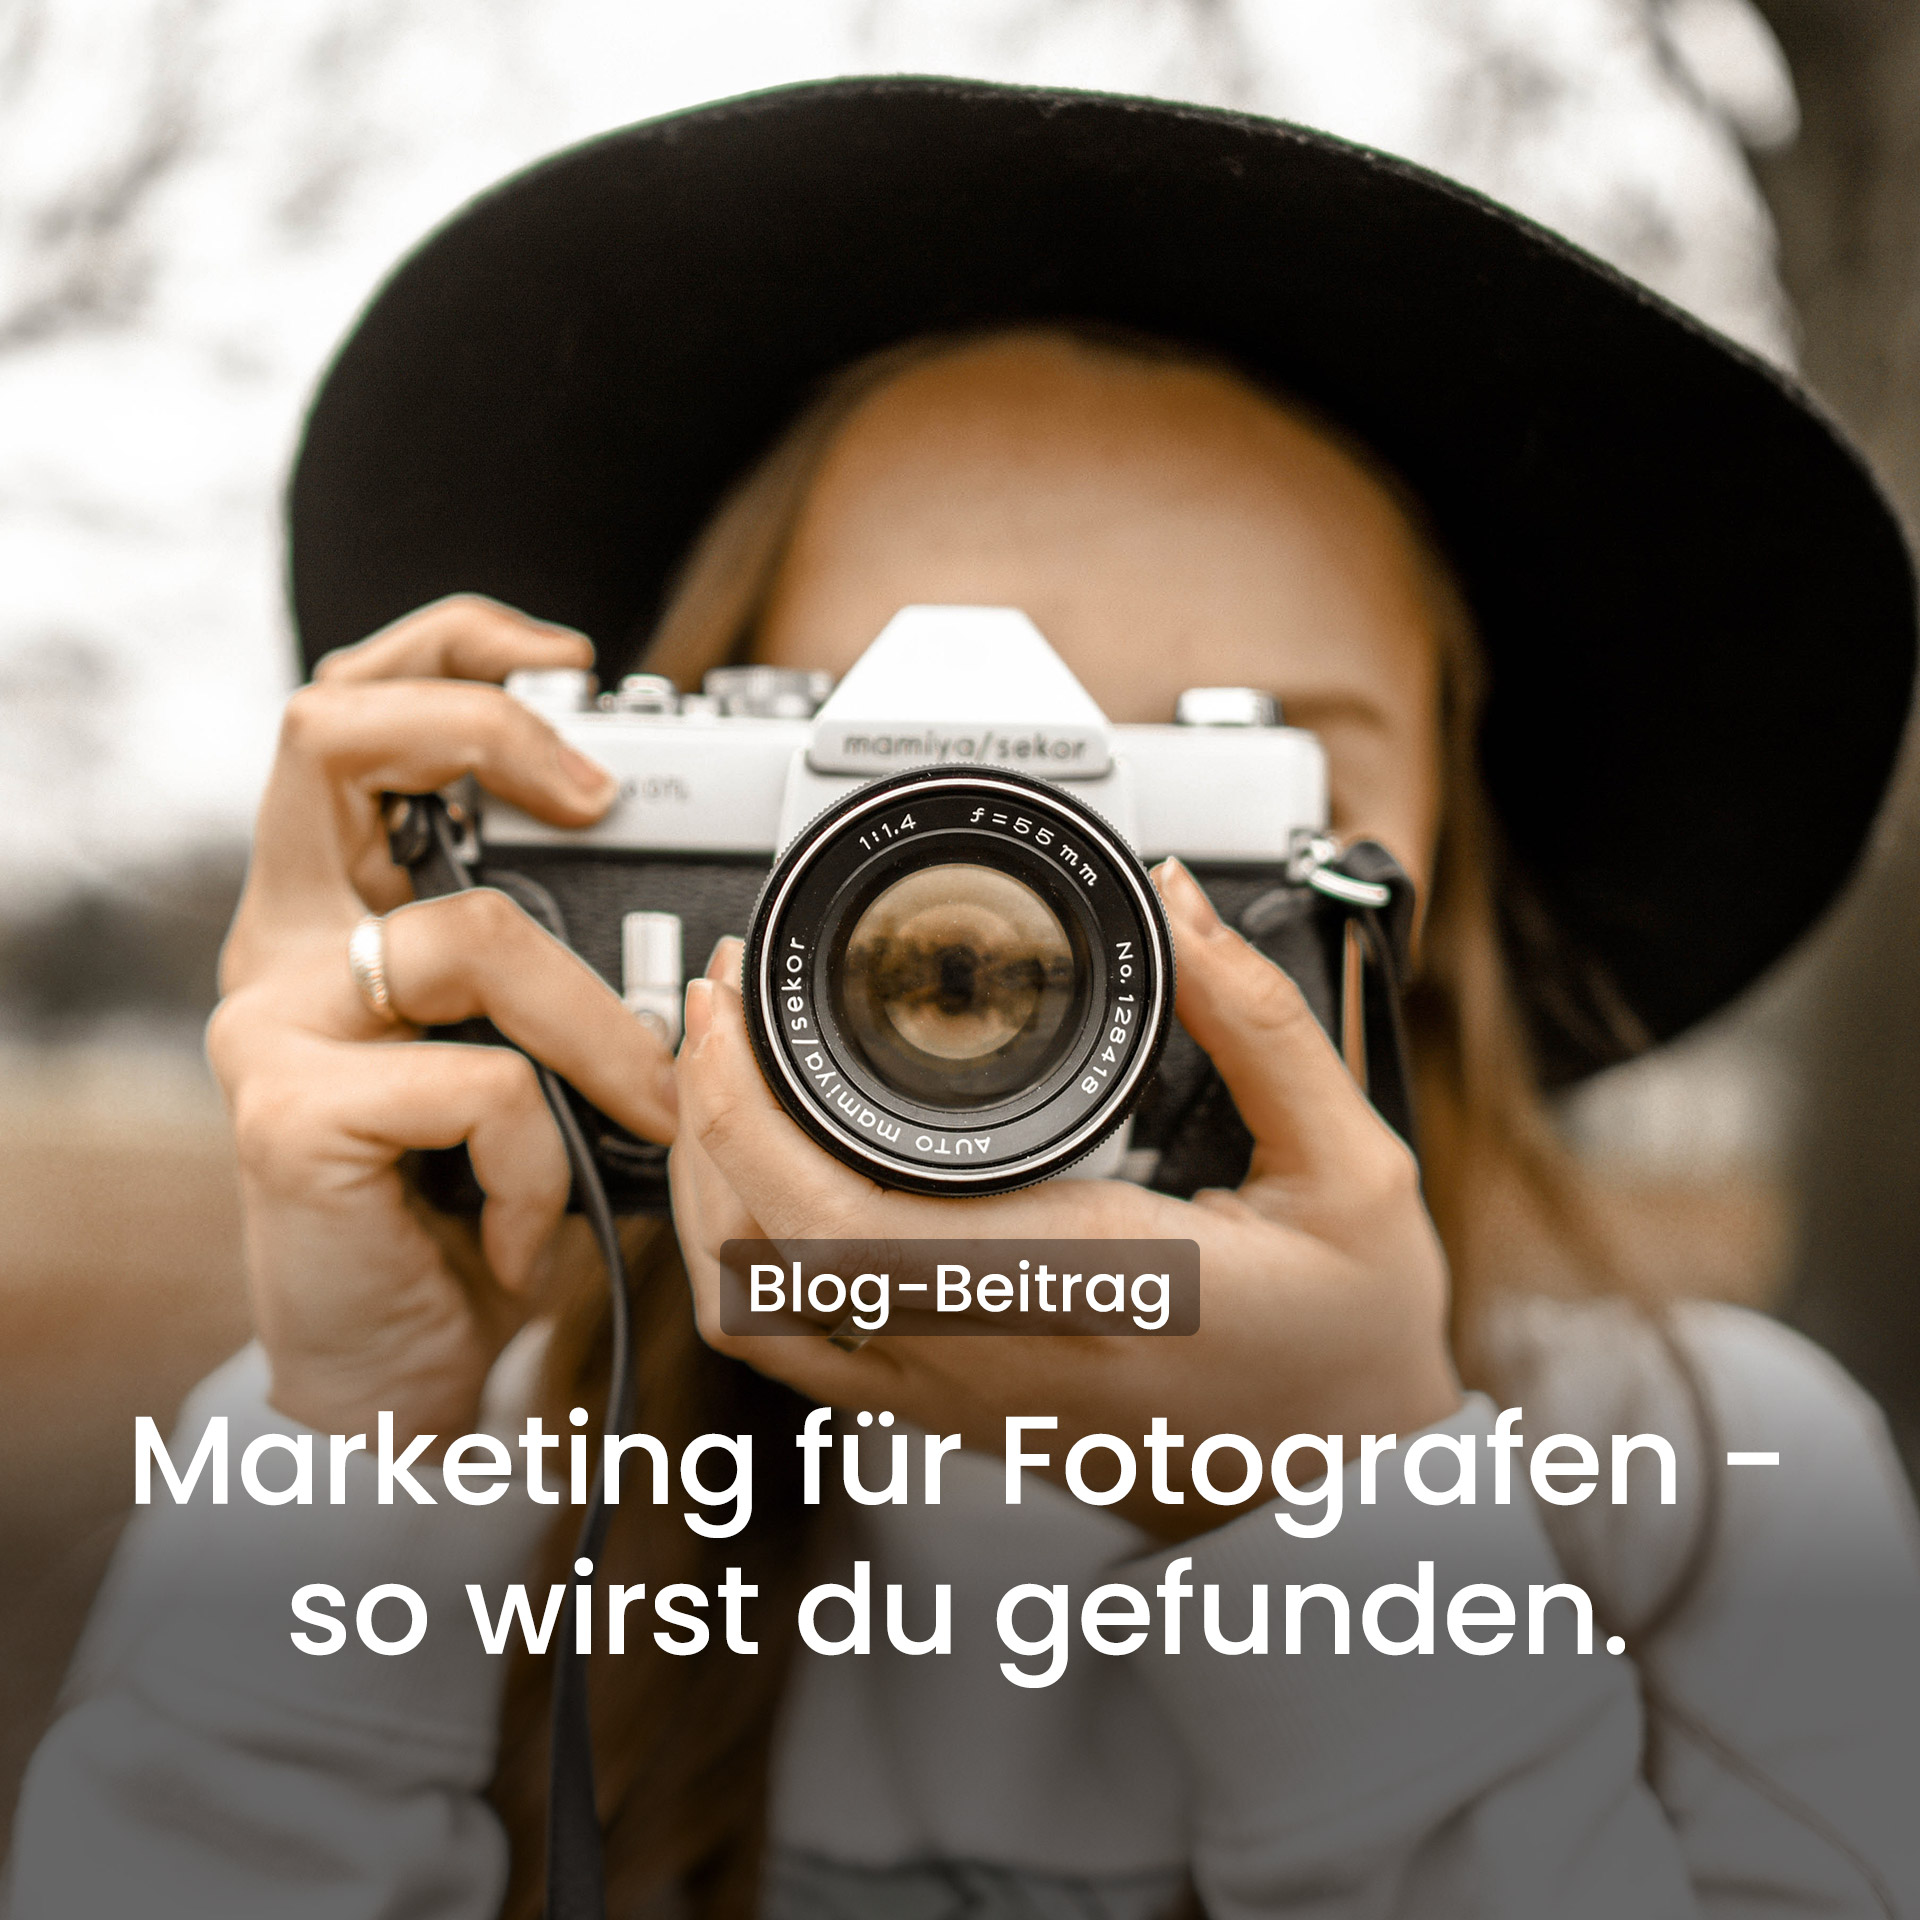 Marketing für Fotografen - von Kunden gefunden werden